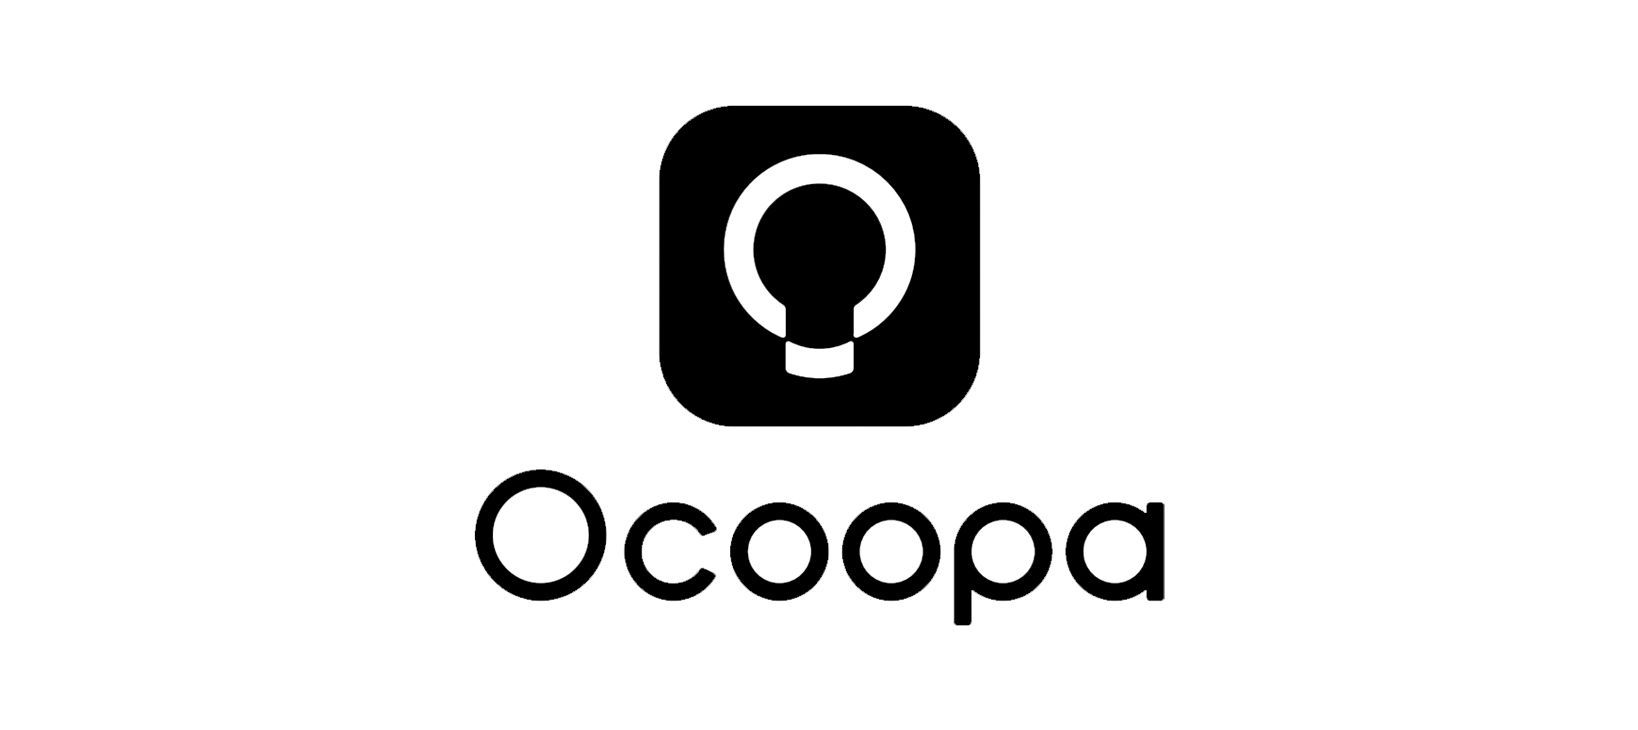 Ocoopa Hand Warmers